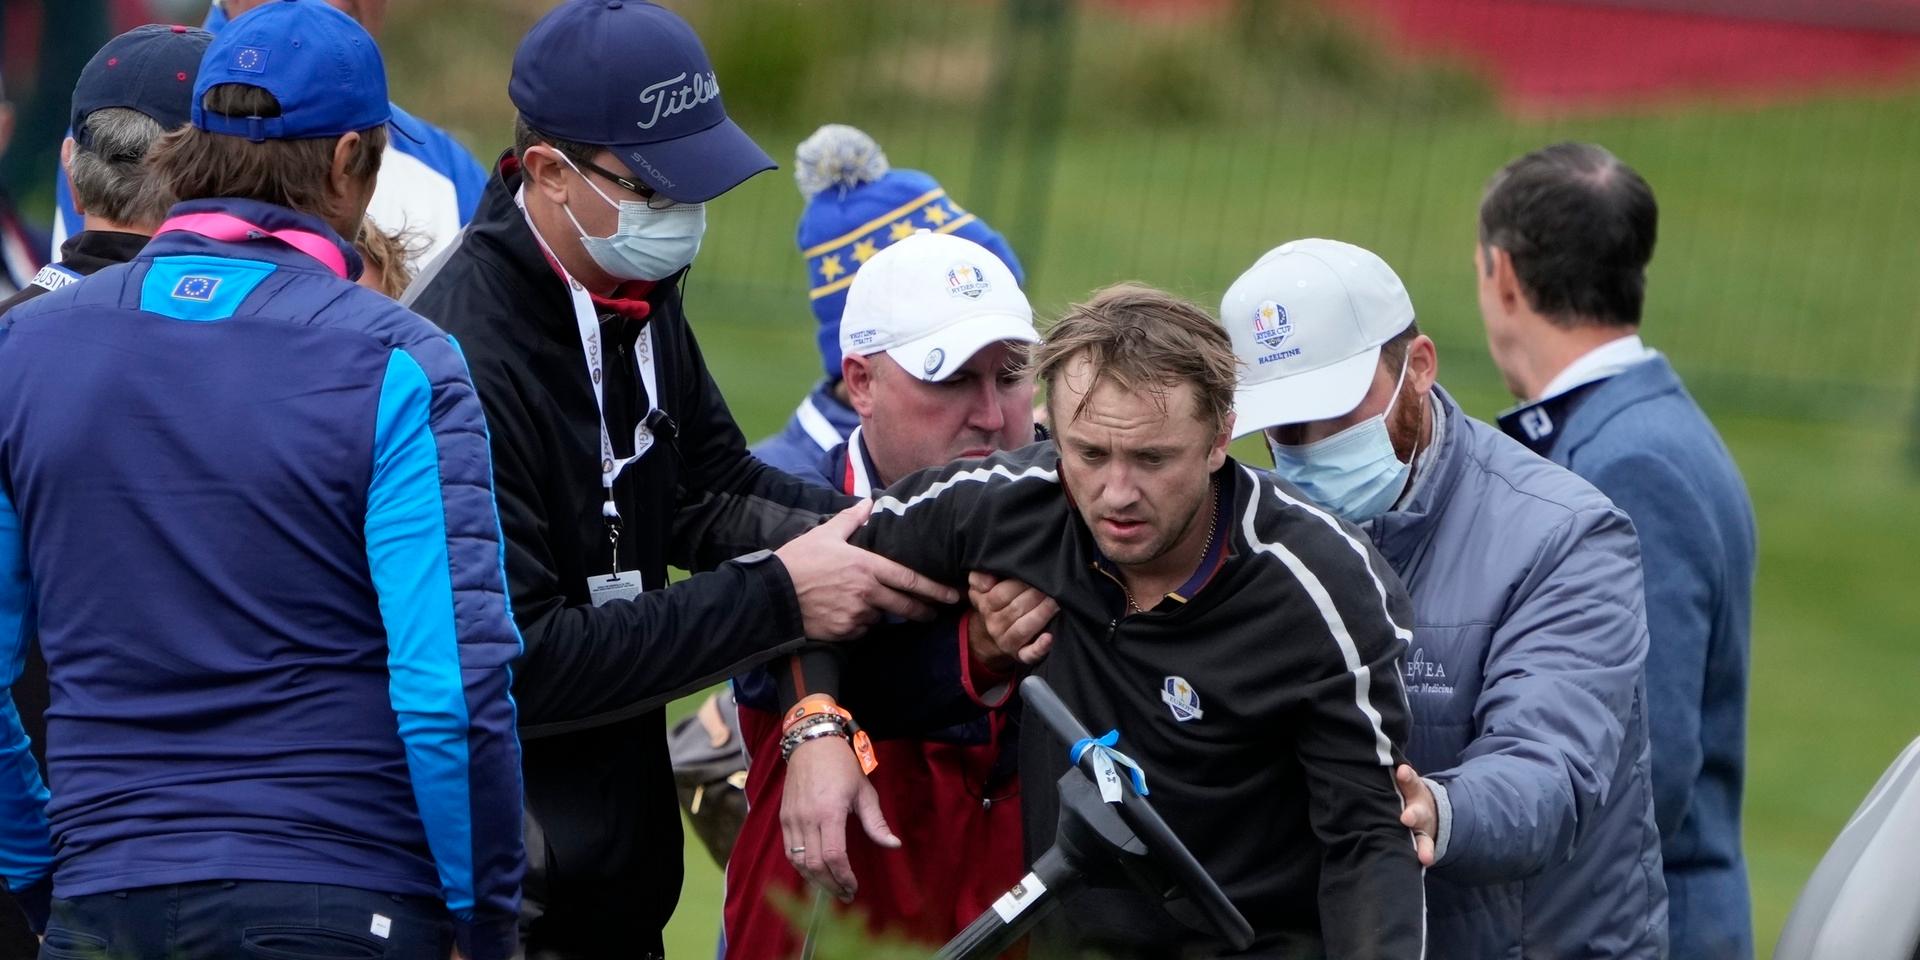 Tom Felton kollapsade under ett evenemang inför golfturneringen Ryder cup i torsdags.